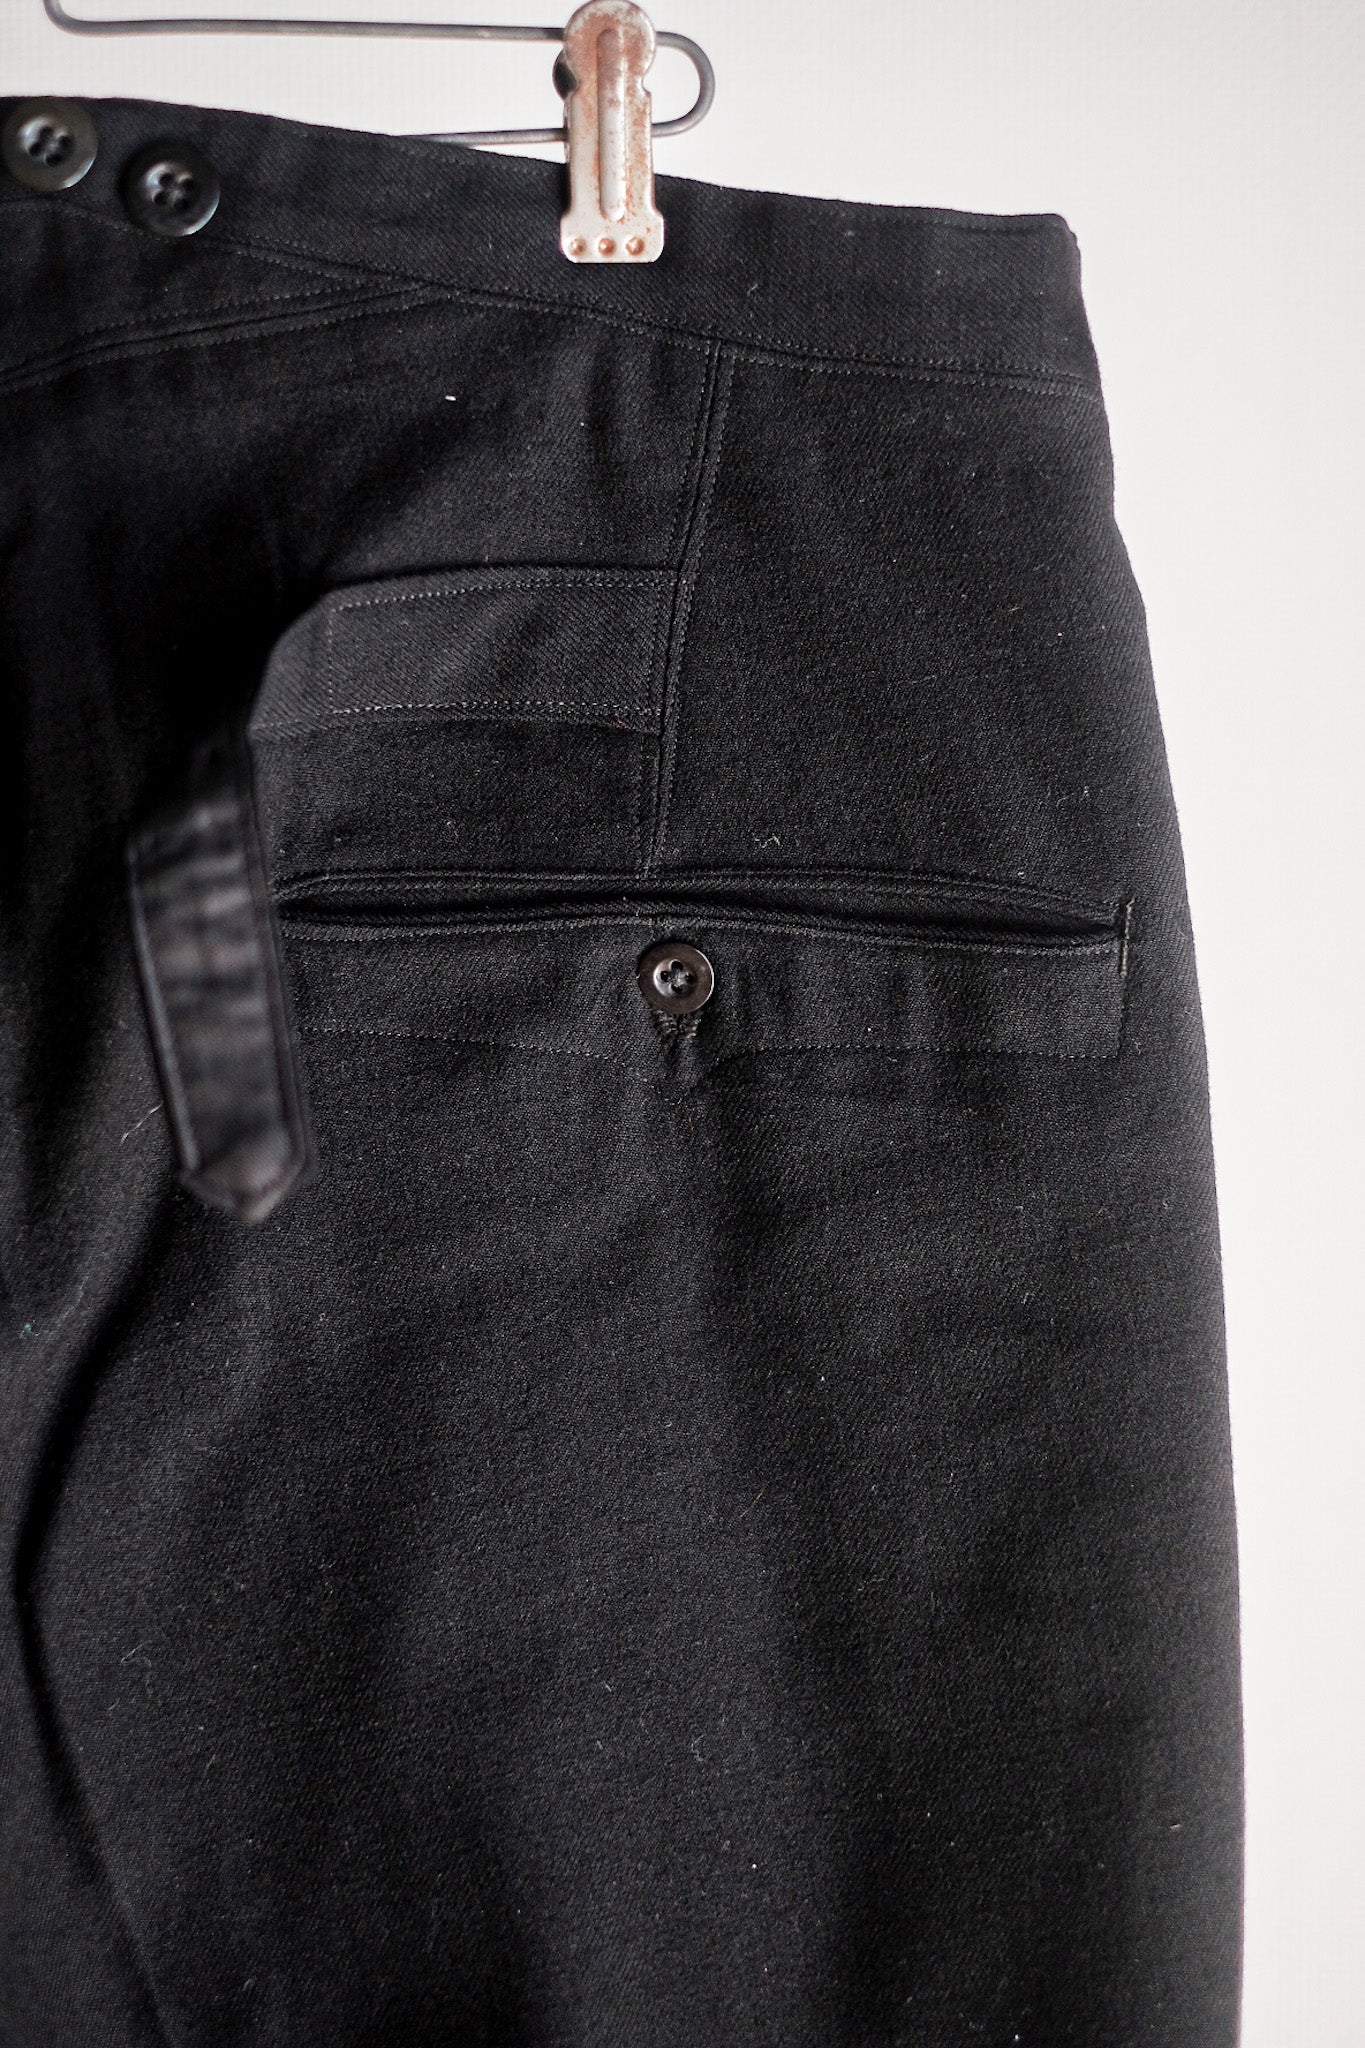 【~40's】German Vintage Black Wool Trousers